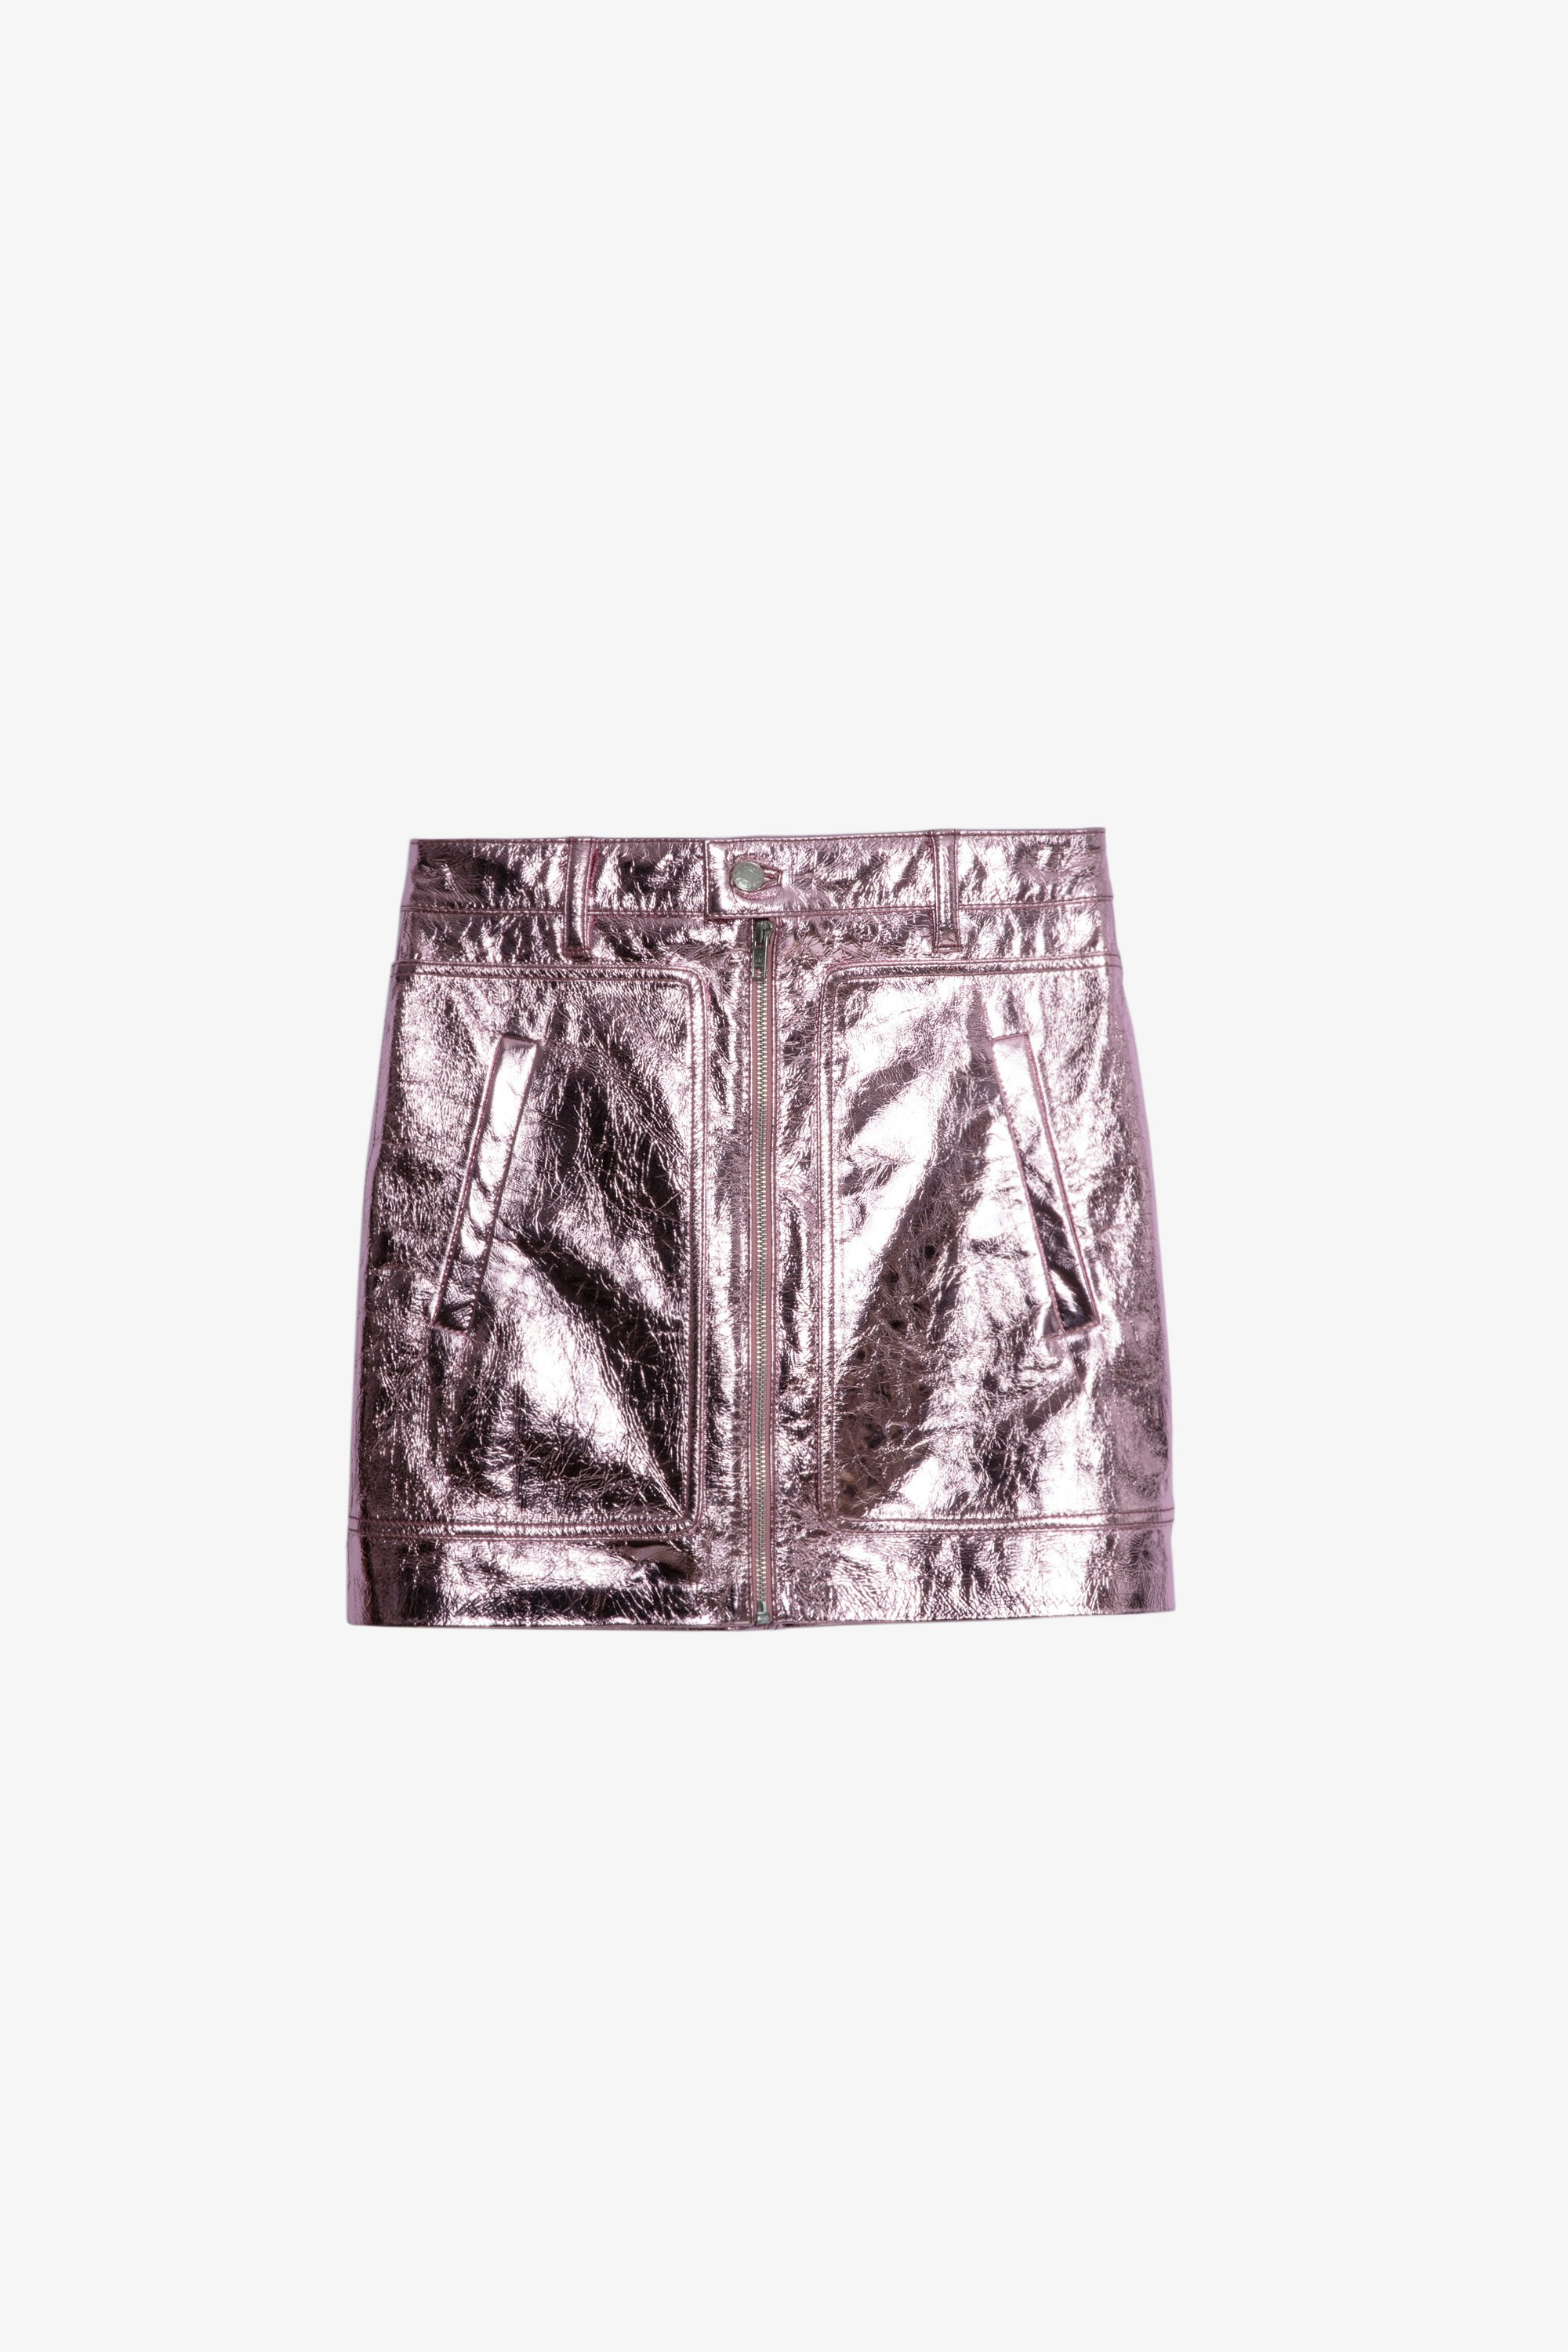 Leather John Skirt Women’s pink metallic leather short skirt